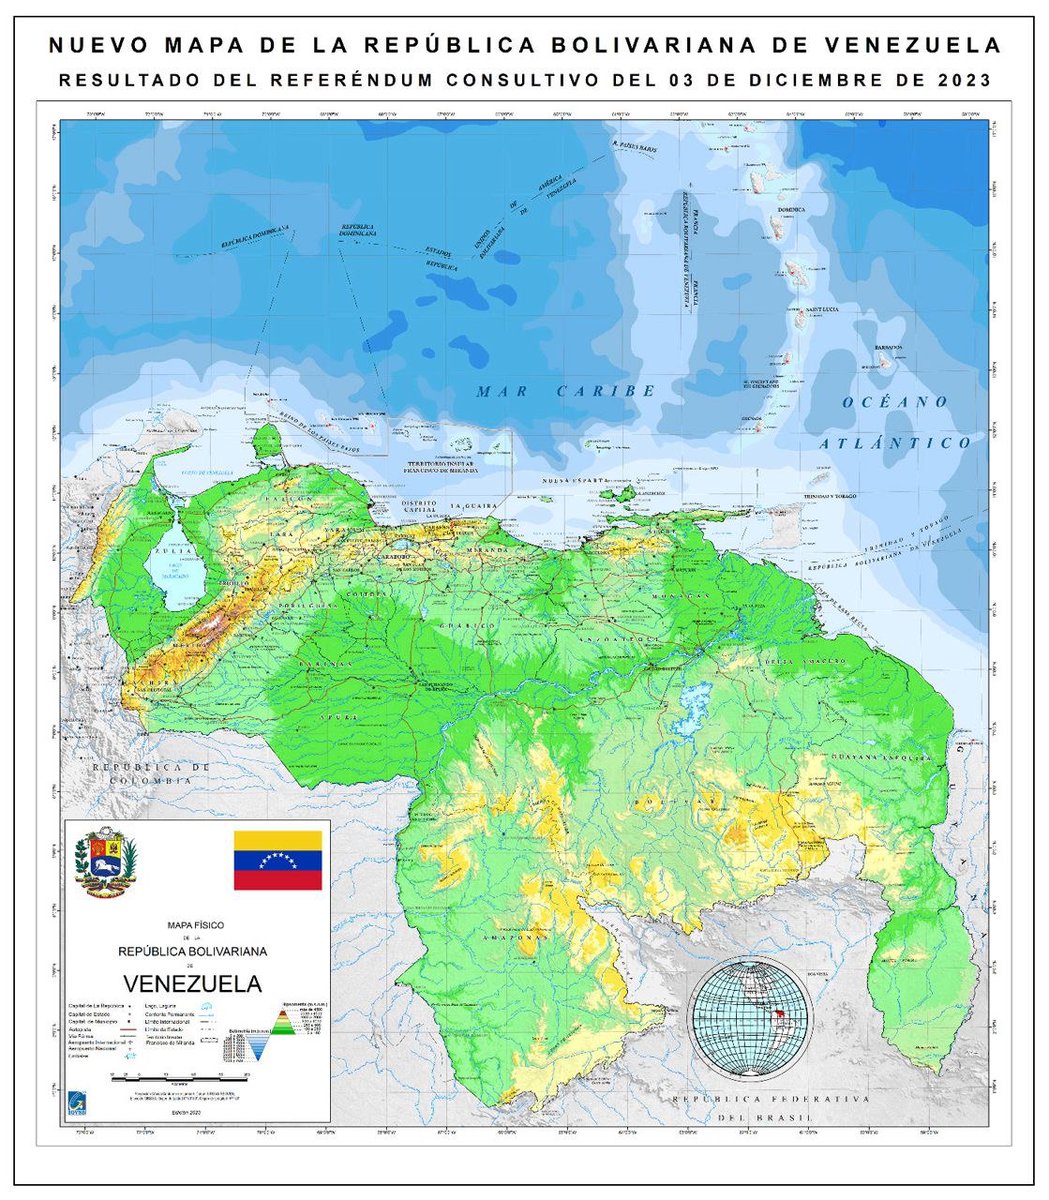 El mayor triunfo del pueblo Venezolano ha sido defender, en unión nacional y con diplomacia de paz, la soberanía y la integridad territorial de Venezuela. Poniendo en marcha el quinto consenso por la Guayana Esequiba.